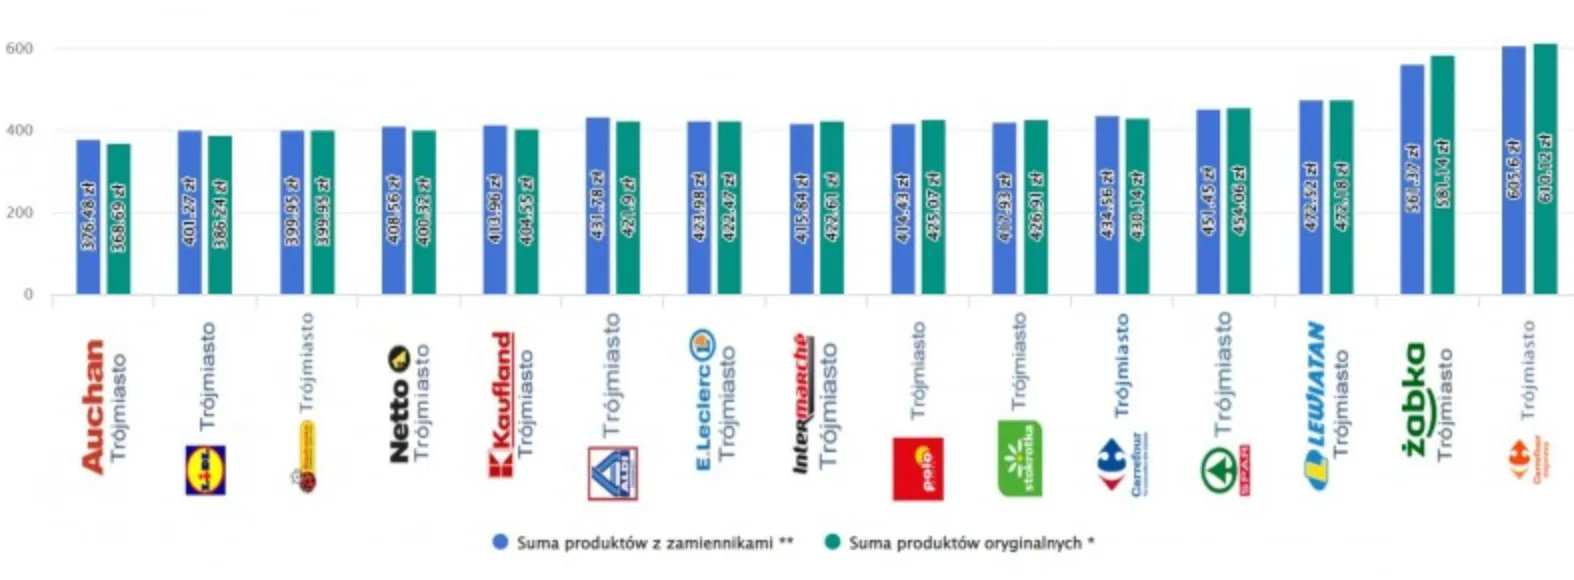 Суми продуктів у різних супермаркетах Польщі